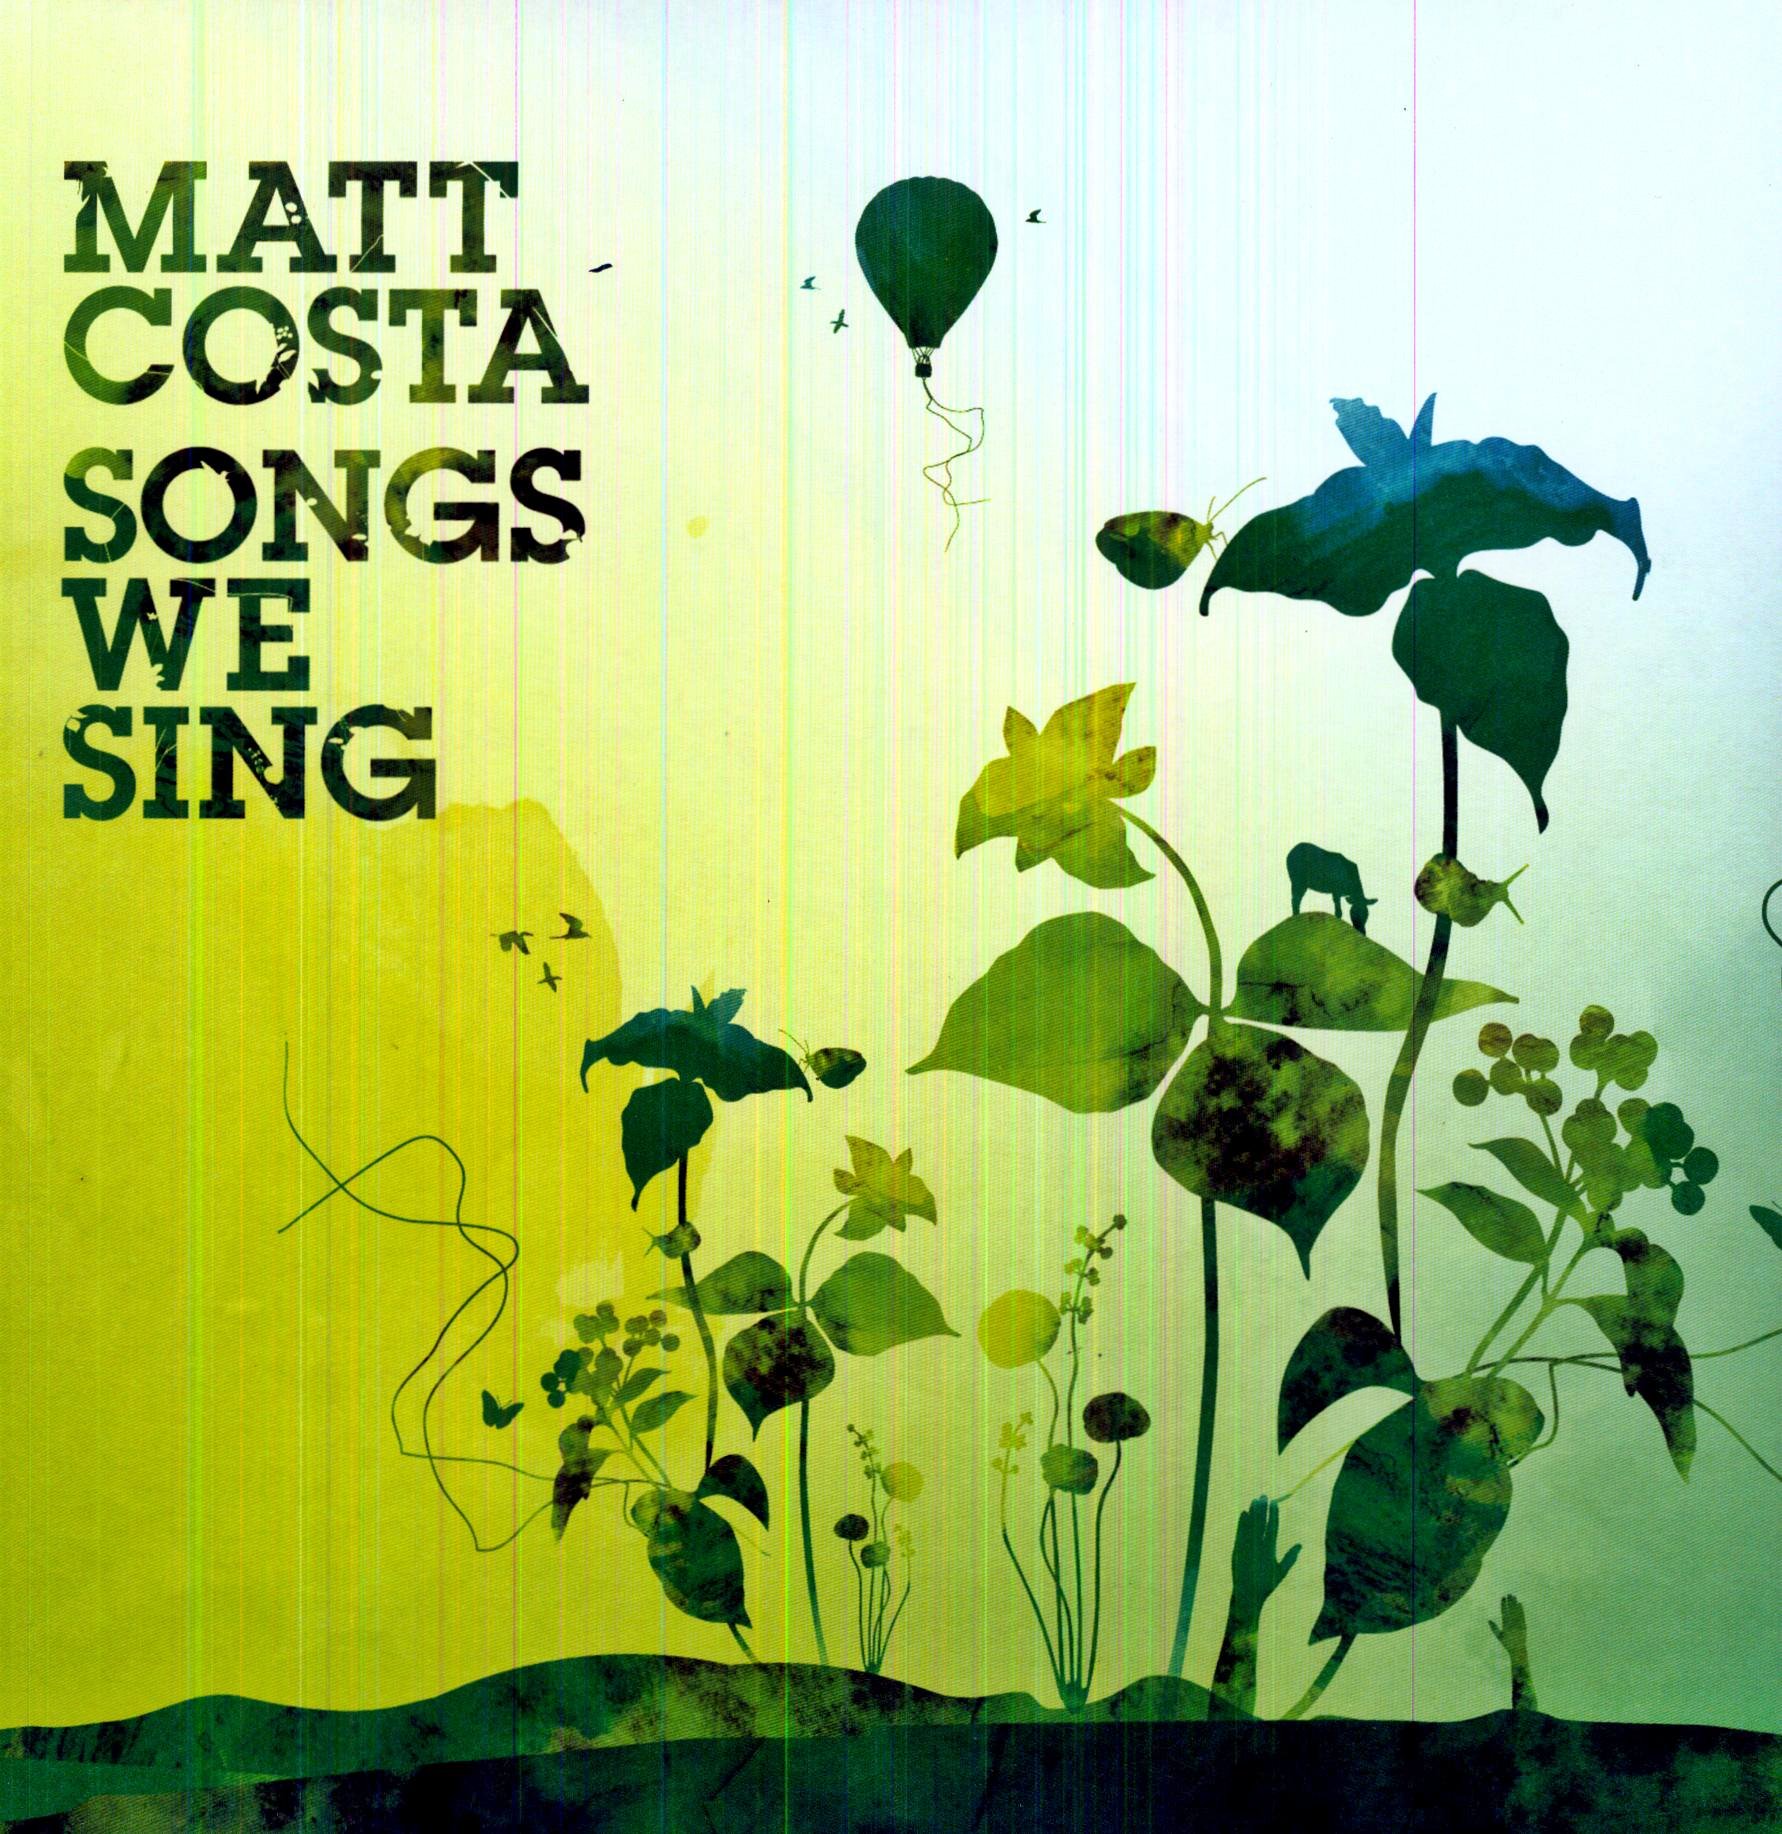 Matt costa. Обложка песни зелень. Singing mat. We Sing Songs.. Песни о природе обложка.